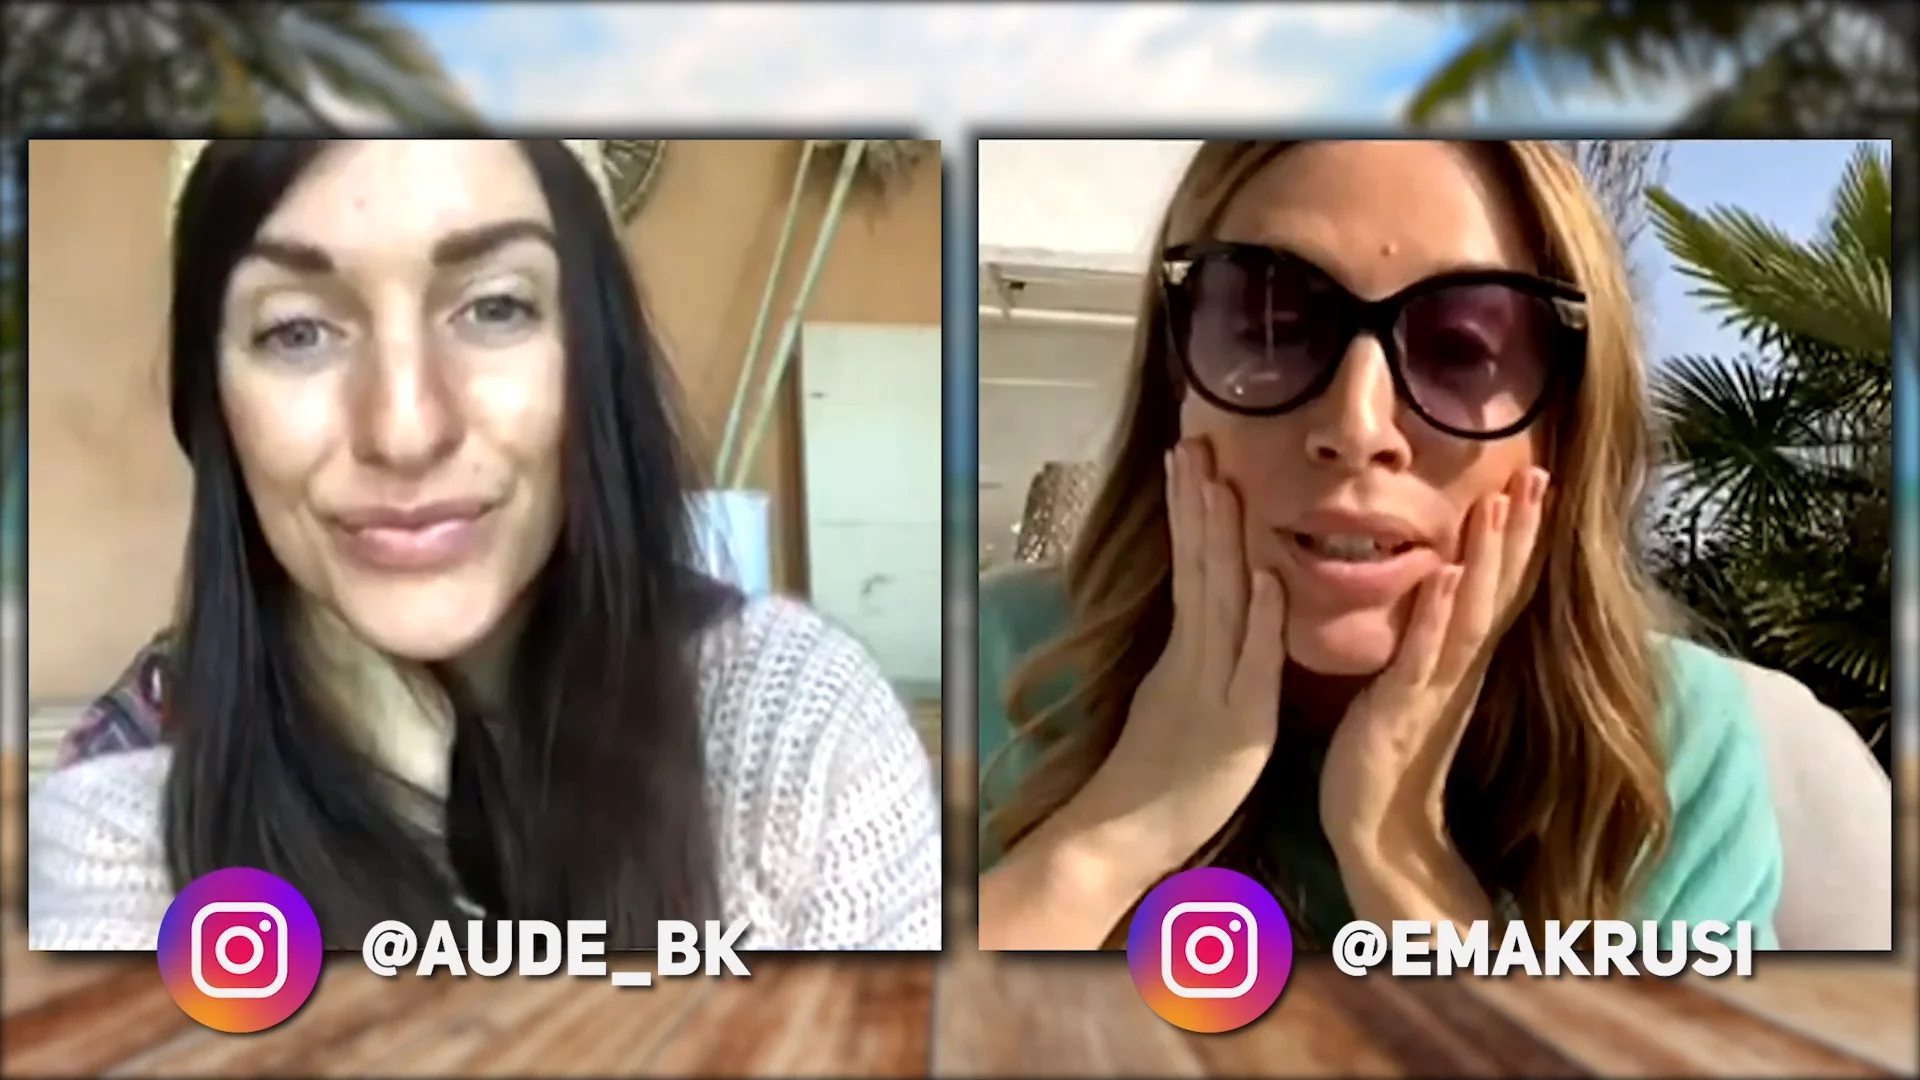 Ema Krusi invitée par Aude_bk (Live Instagram)